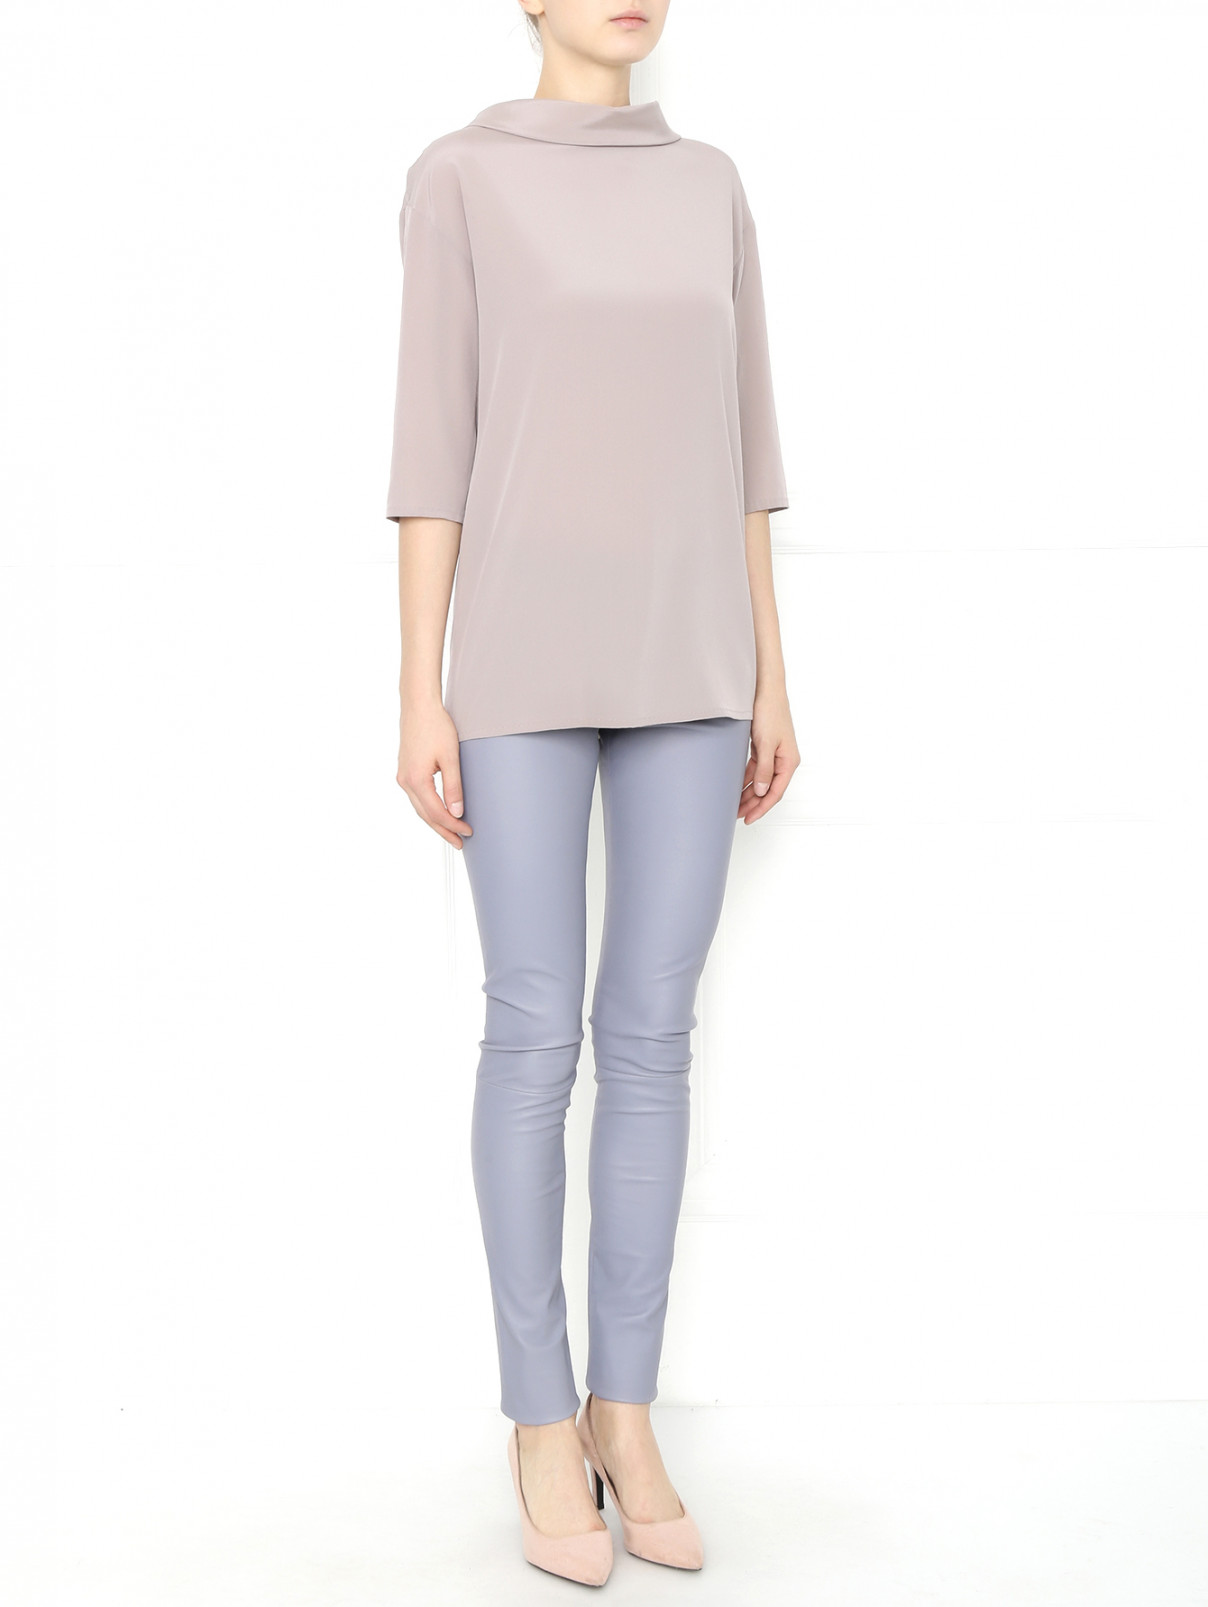 Блуза из шелка с эластаном Les Copains  –  Модель Общий вид  – Цвет:  Бежевый